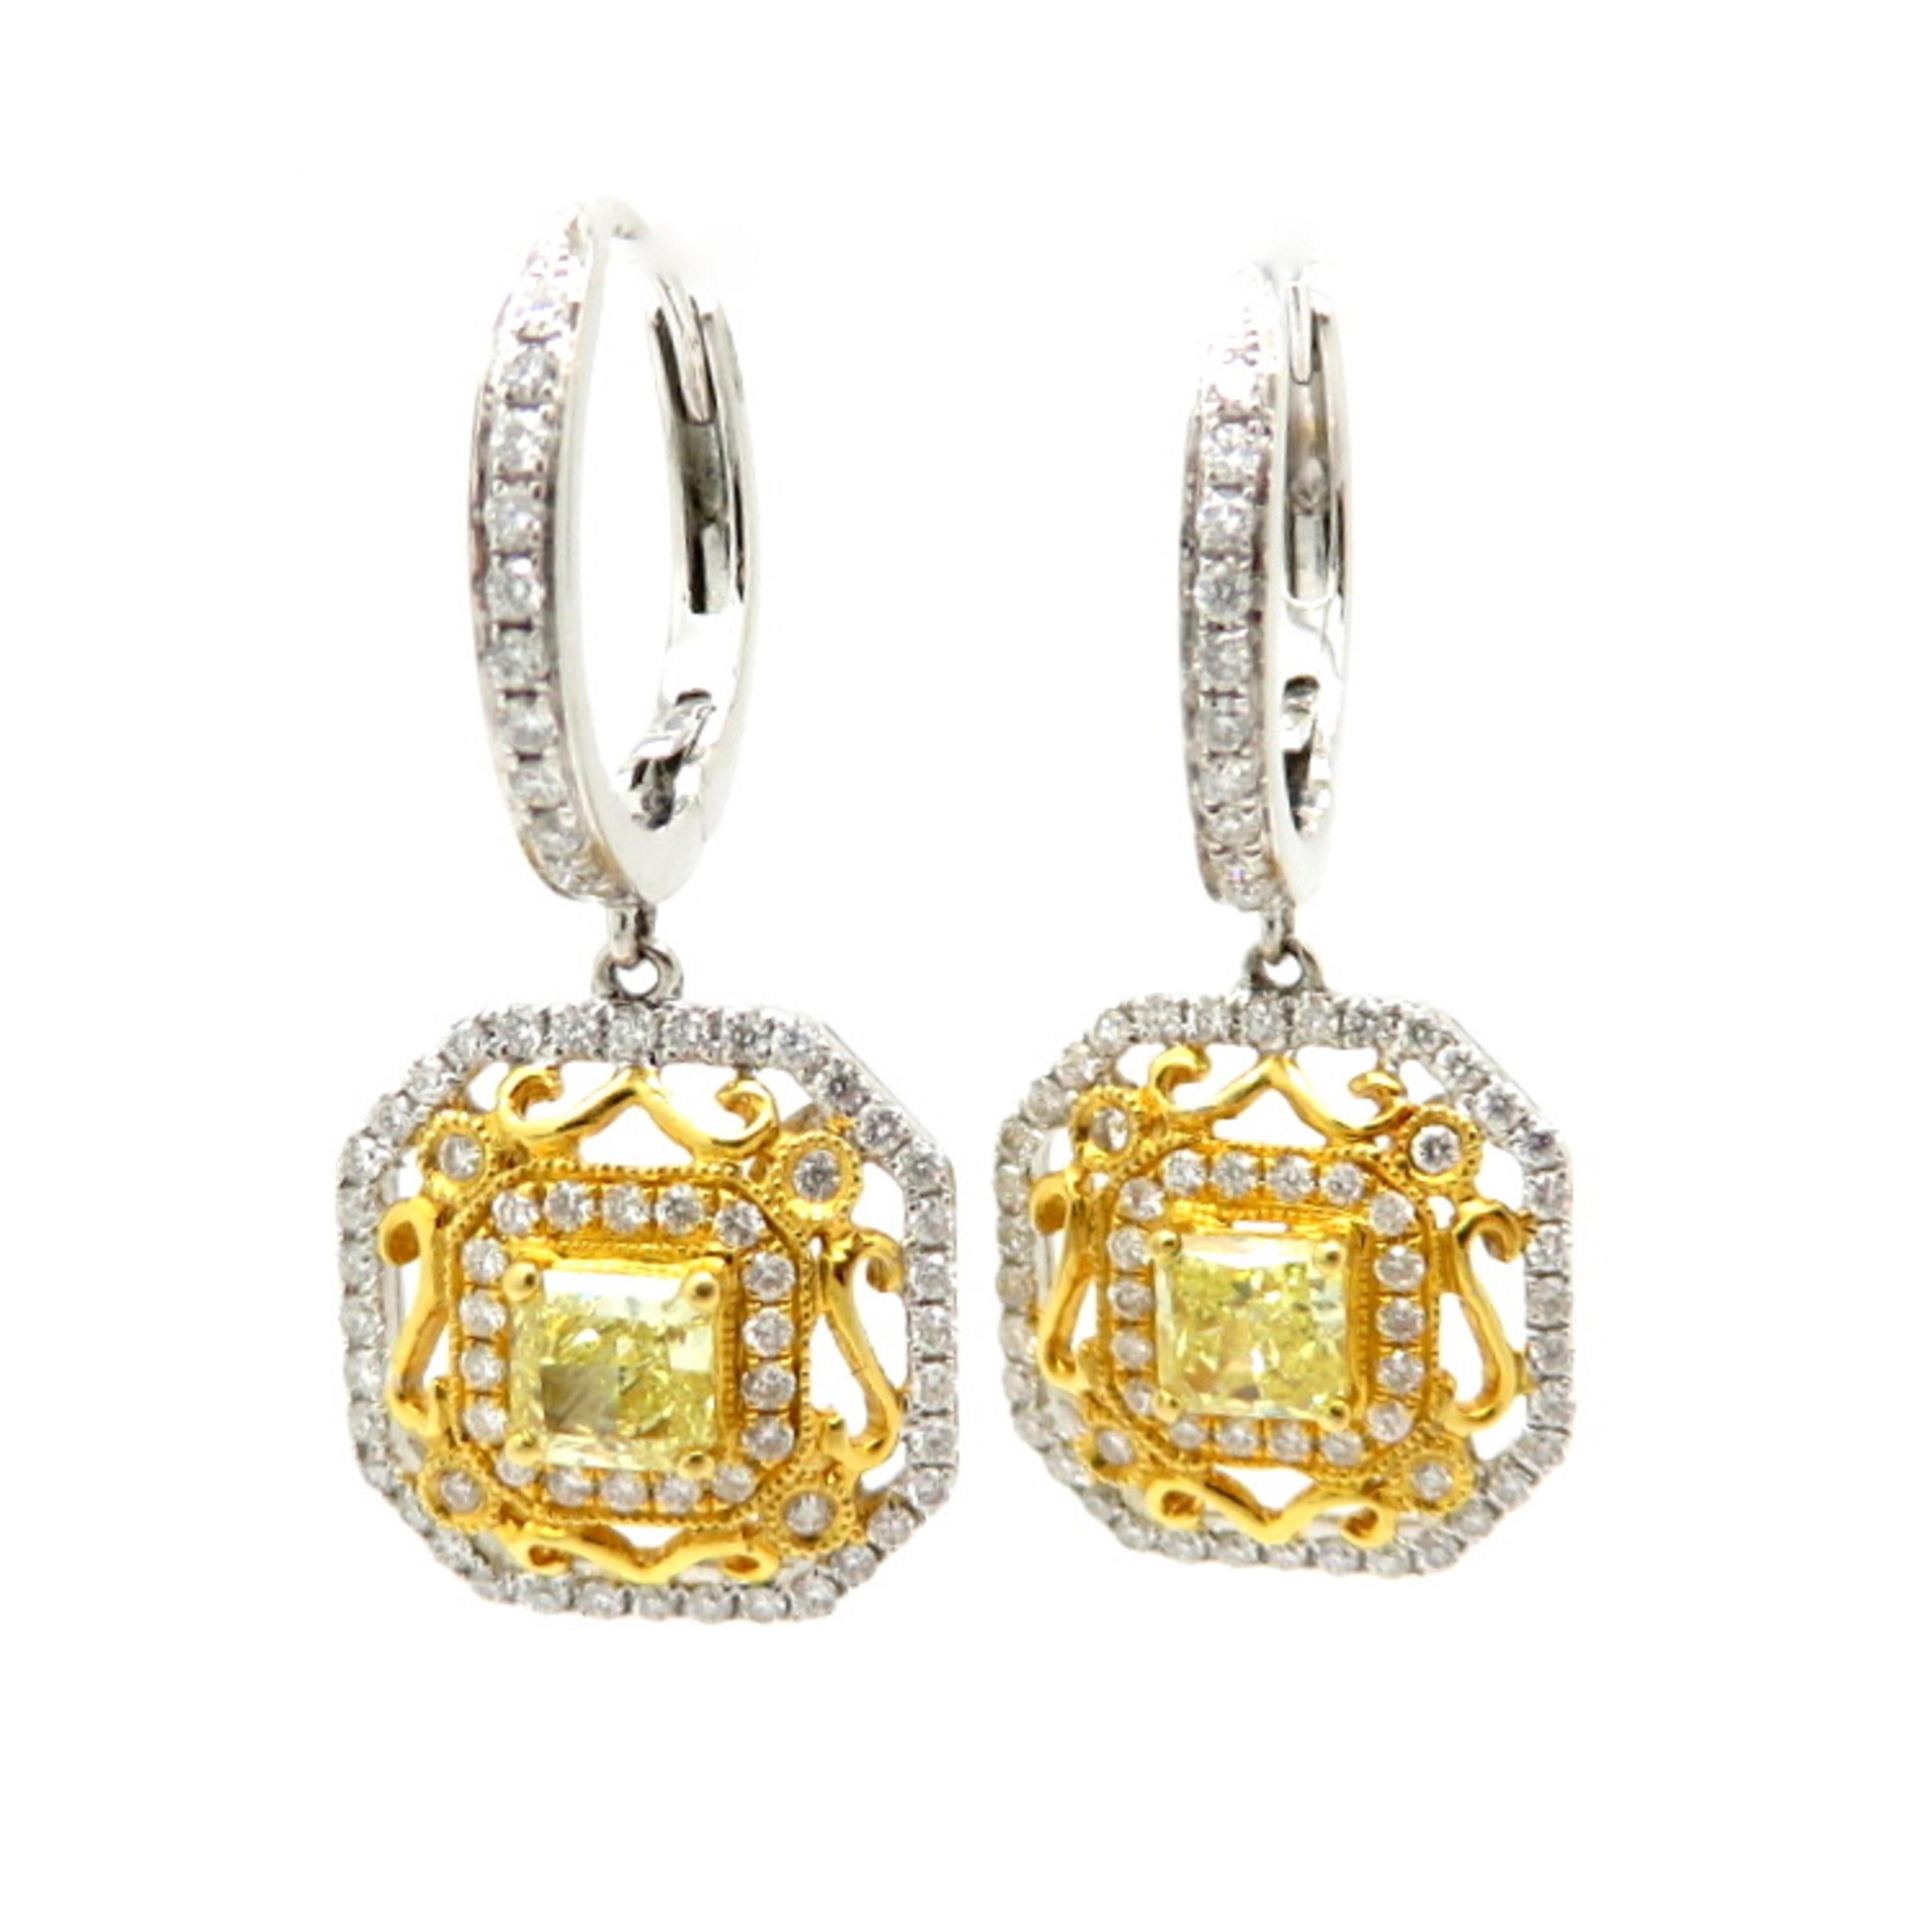 Zum Verkauf steht ein schönes Paar Fancy Yellow Radiant Cut und White Diamond Dangle Earrings aus 18K Weiß-und Gelbgold gefertigt!
In der Mitte jedes Ohrrings befindet sich ein gelber Diamant im Radiant-Schliff mit Reinheit SI1 und einem